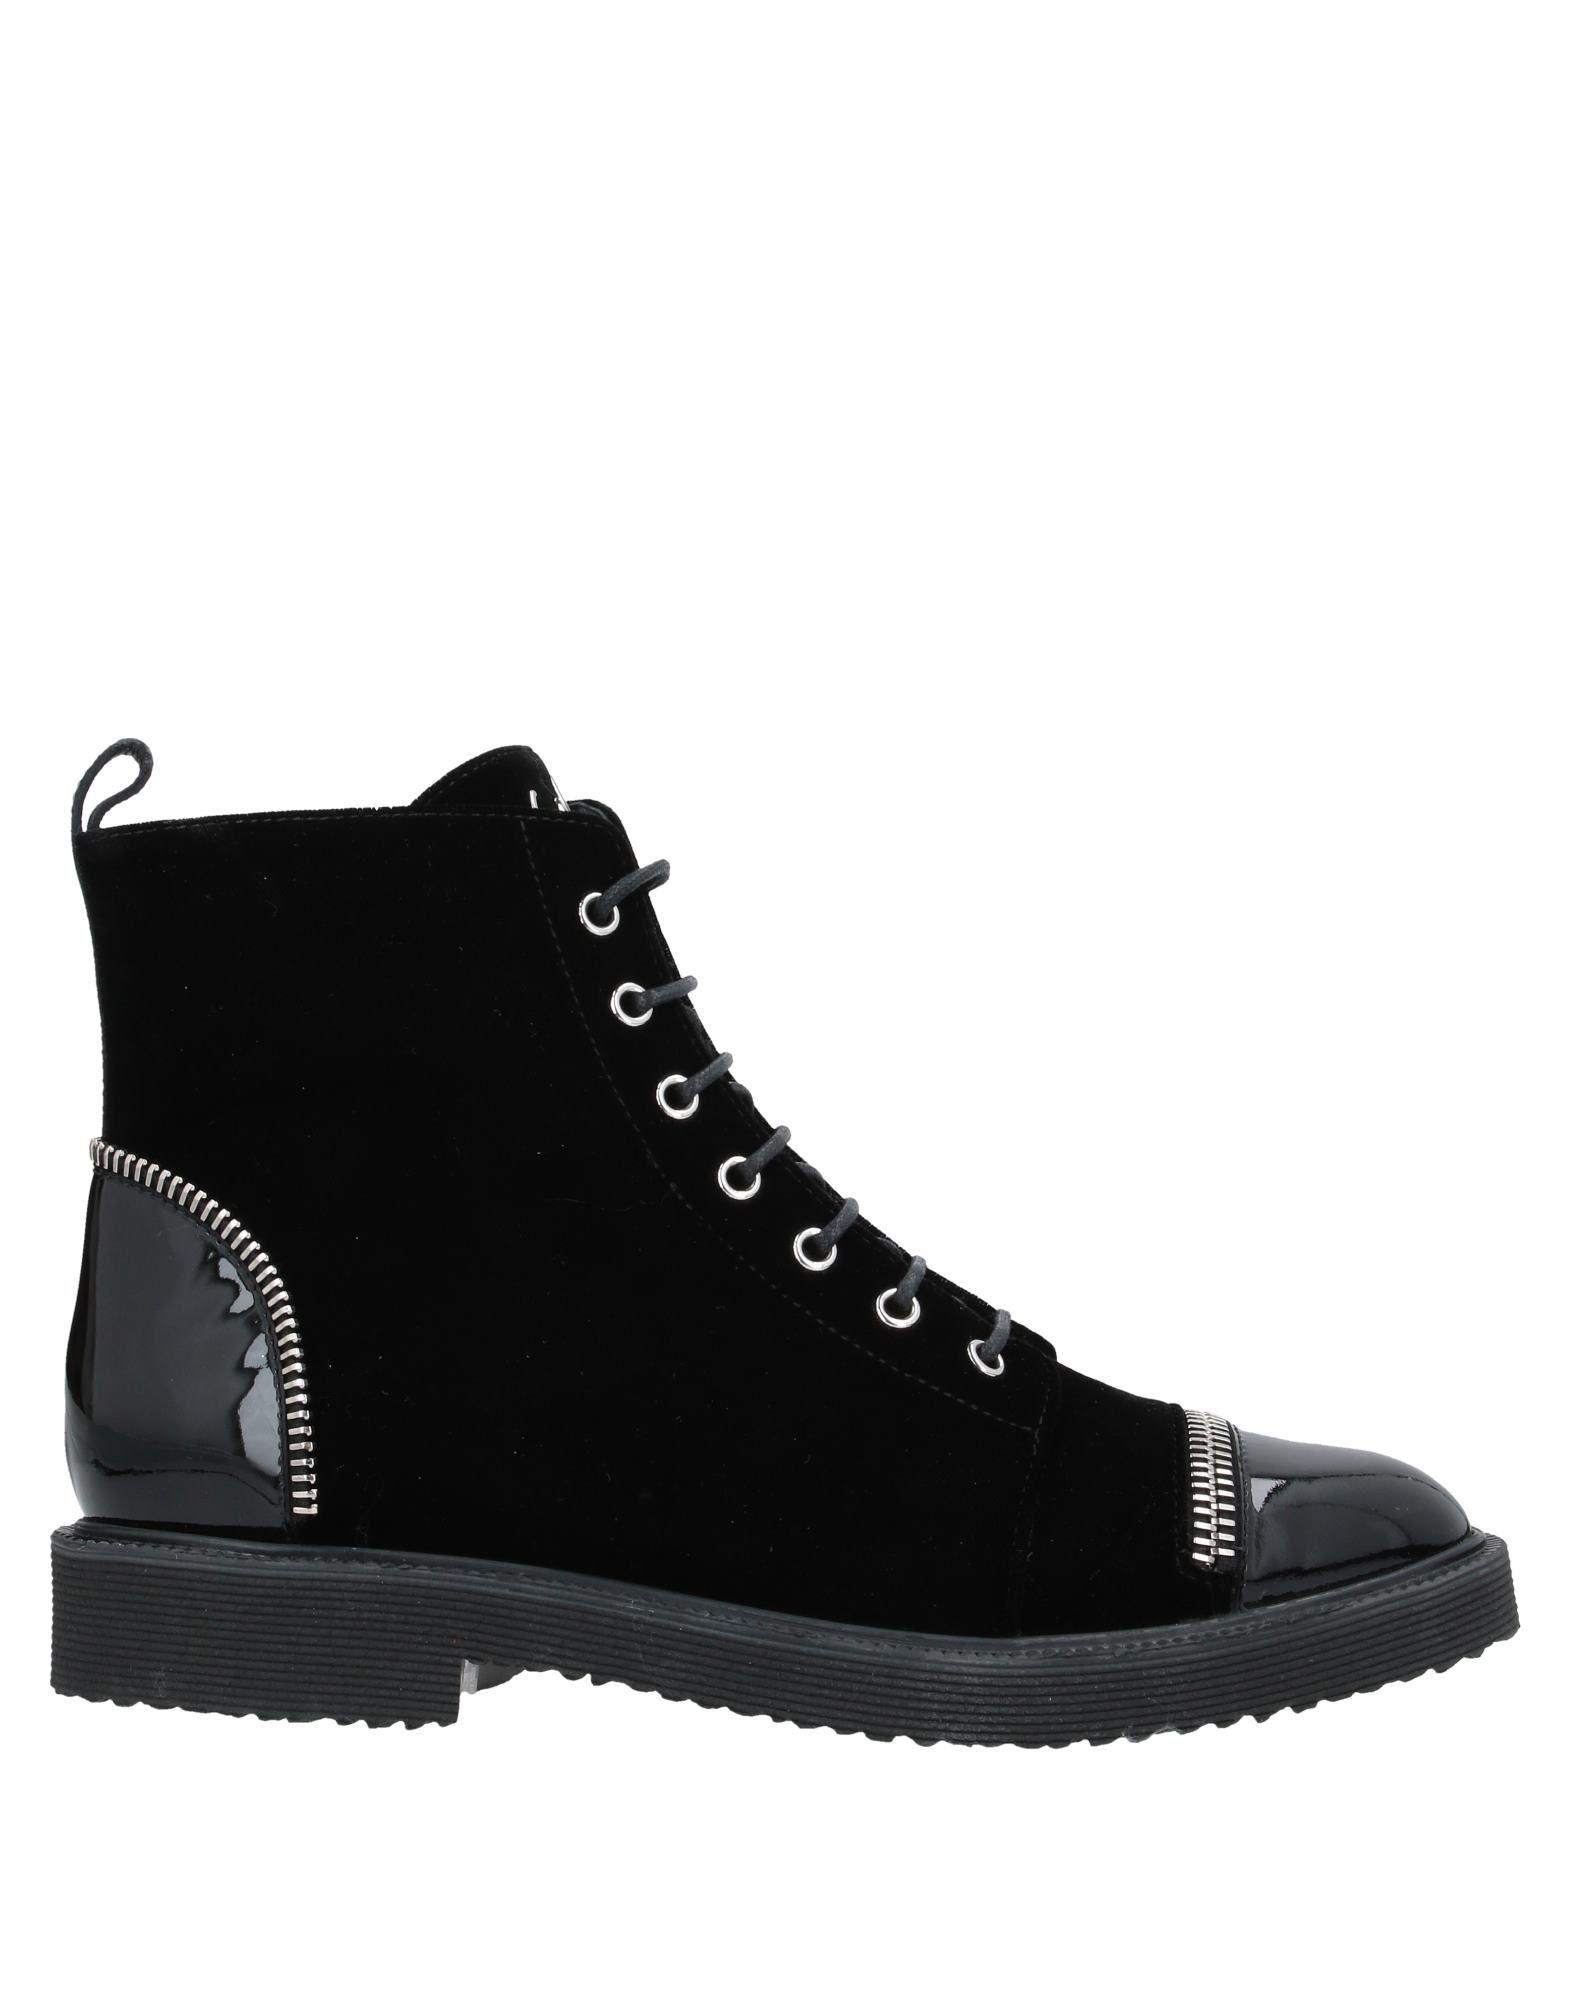 Giuseppe Zanotti Velvet Ankle Boots in Black - Lyst